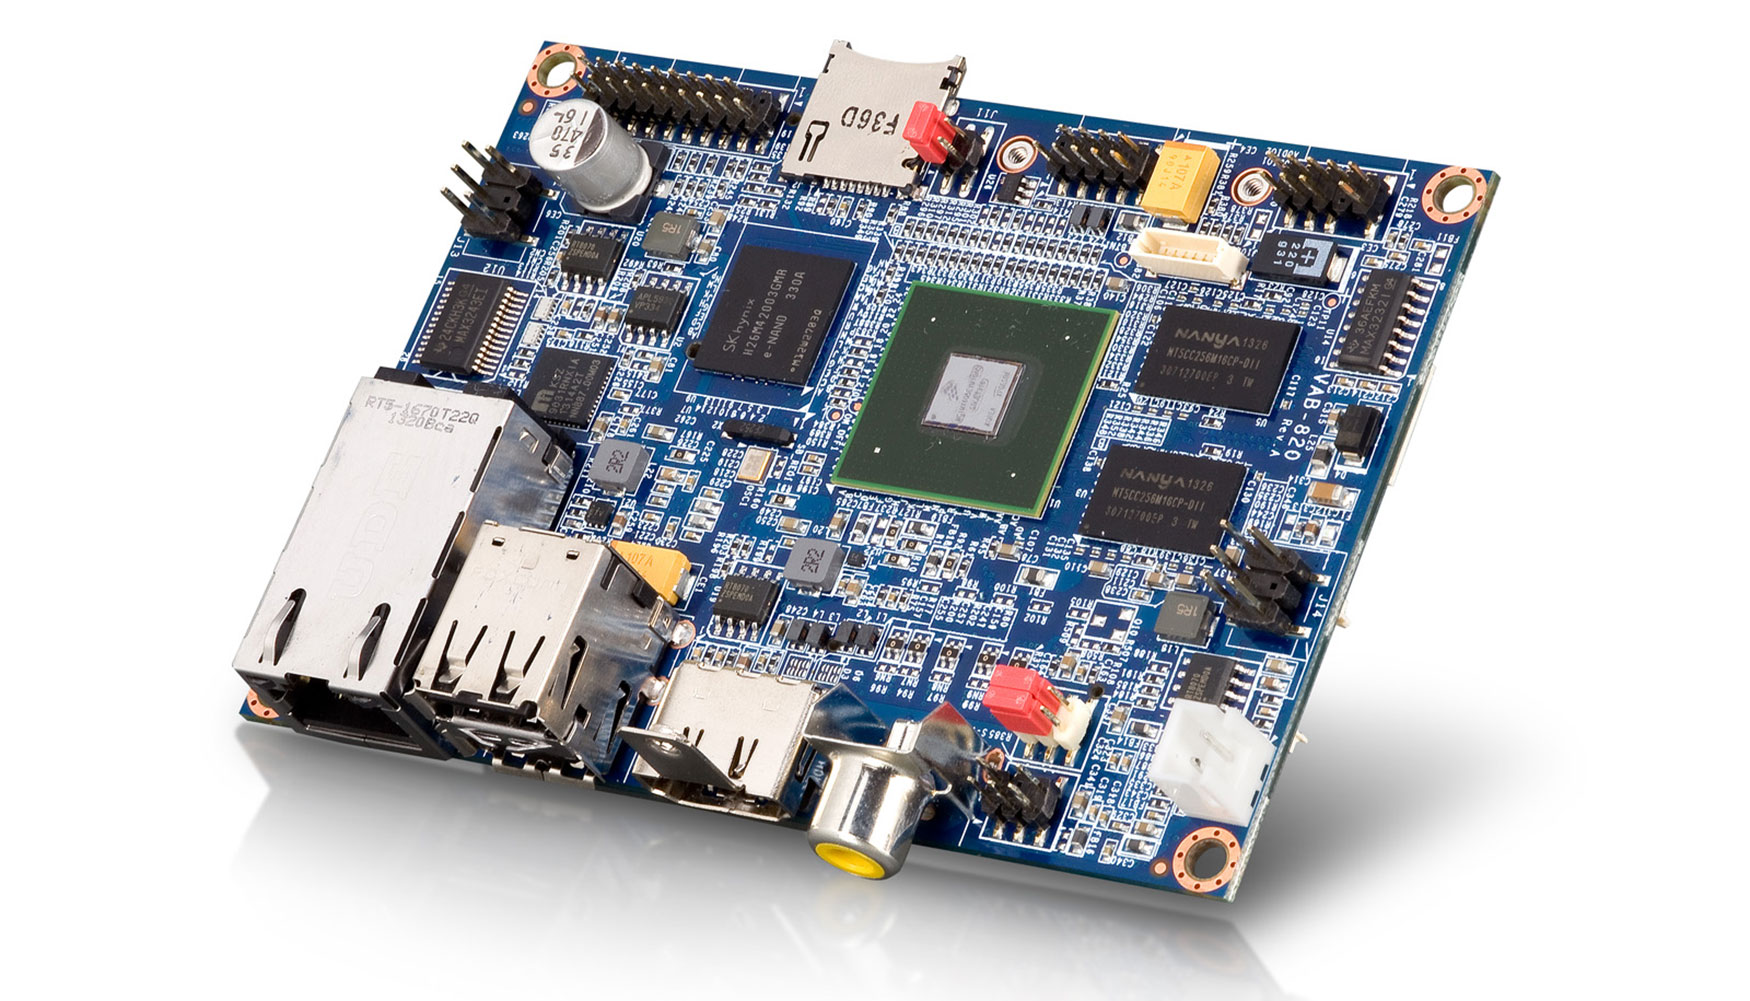 La nueva placa posee mltiples I/O y funciones de conectividad en un formato Pico-ITX